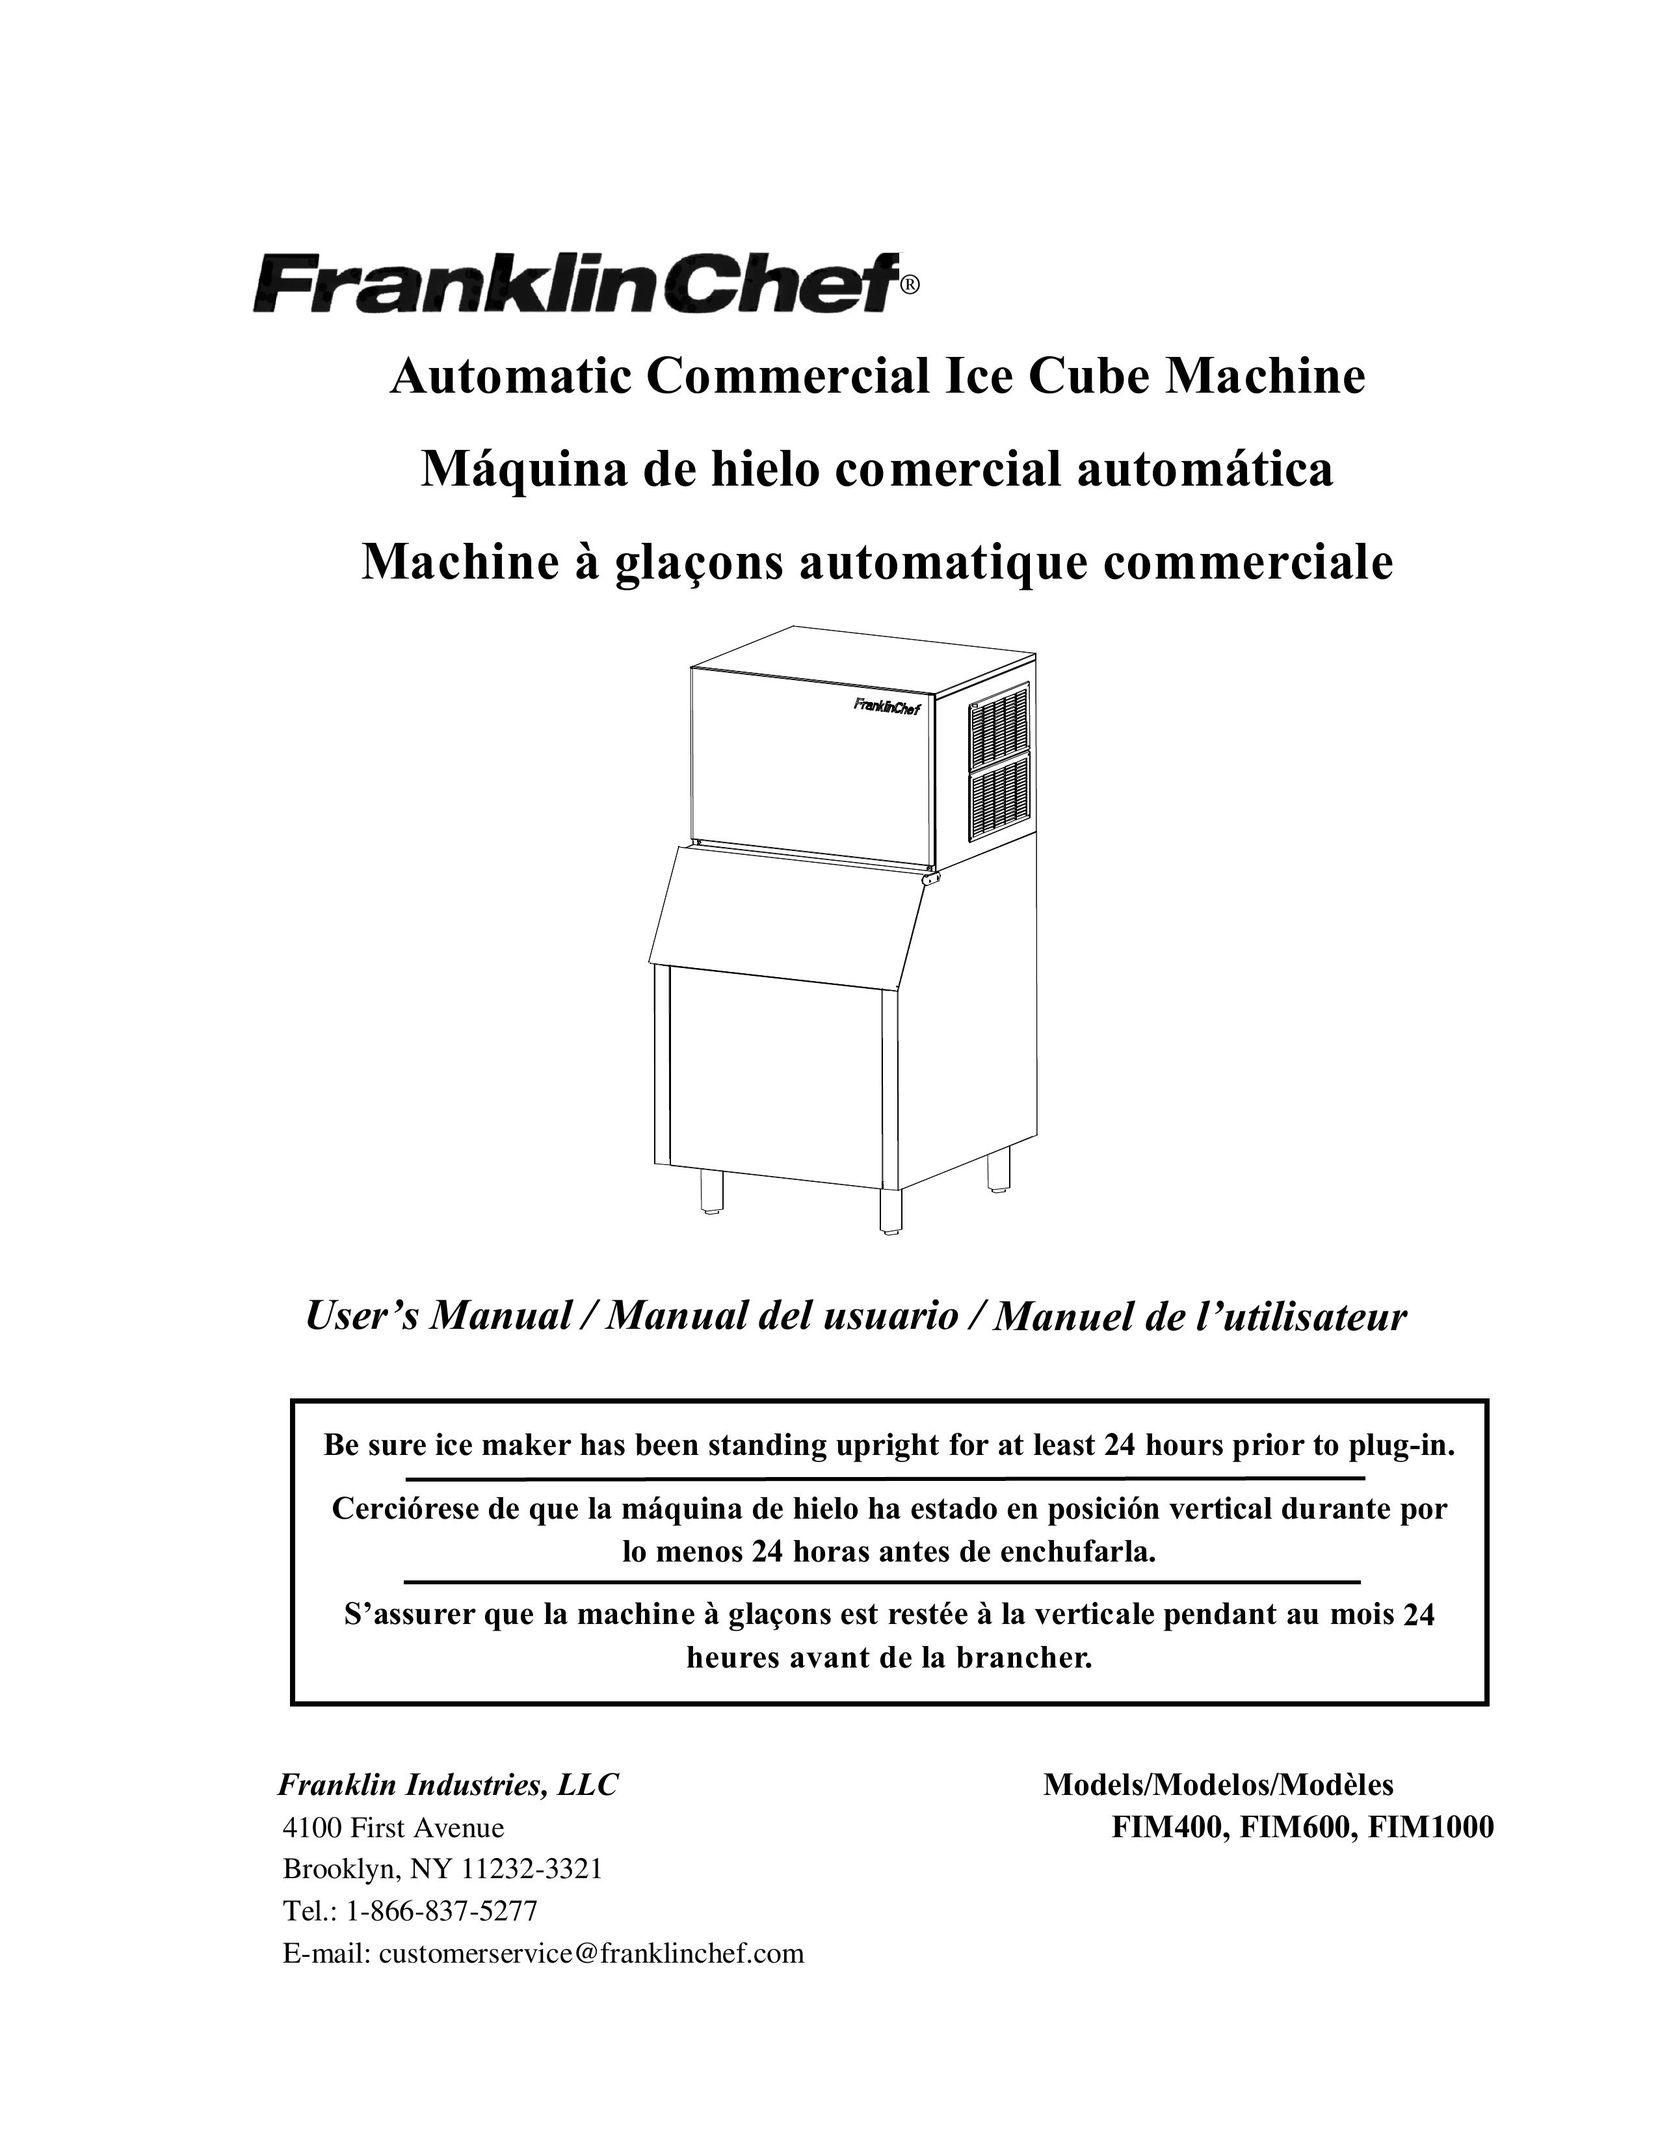 Franklin Industries, L.L.C. FIM1000 Ice Maker User Manual